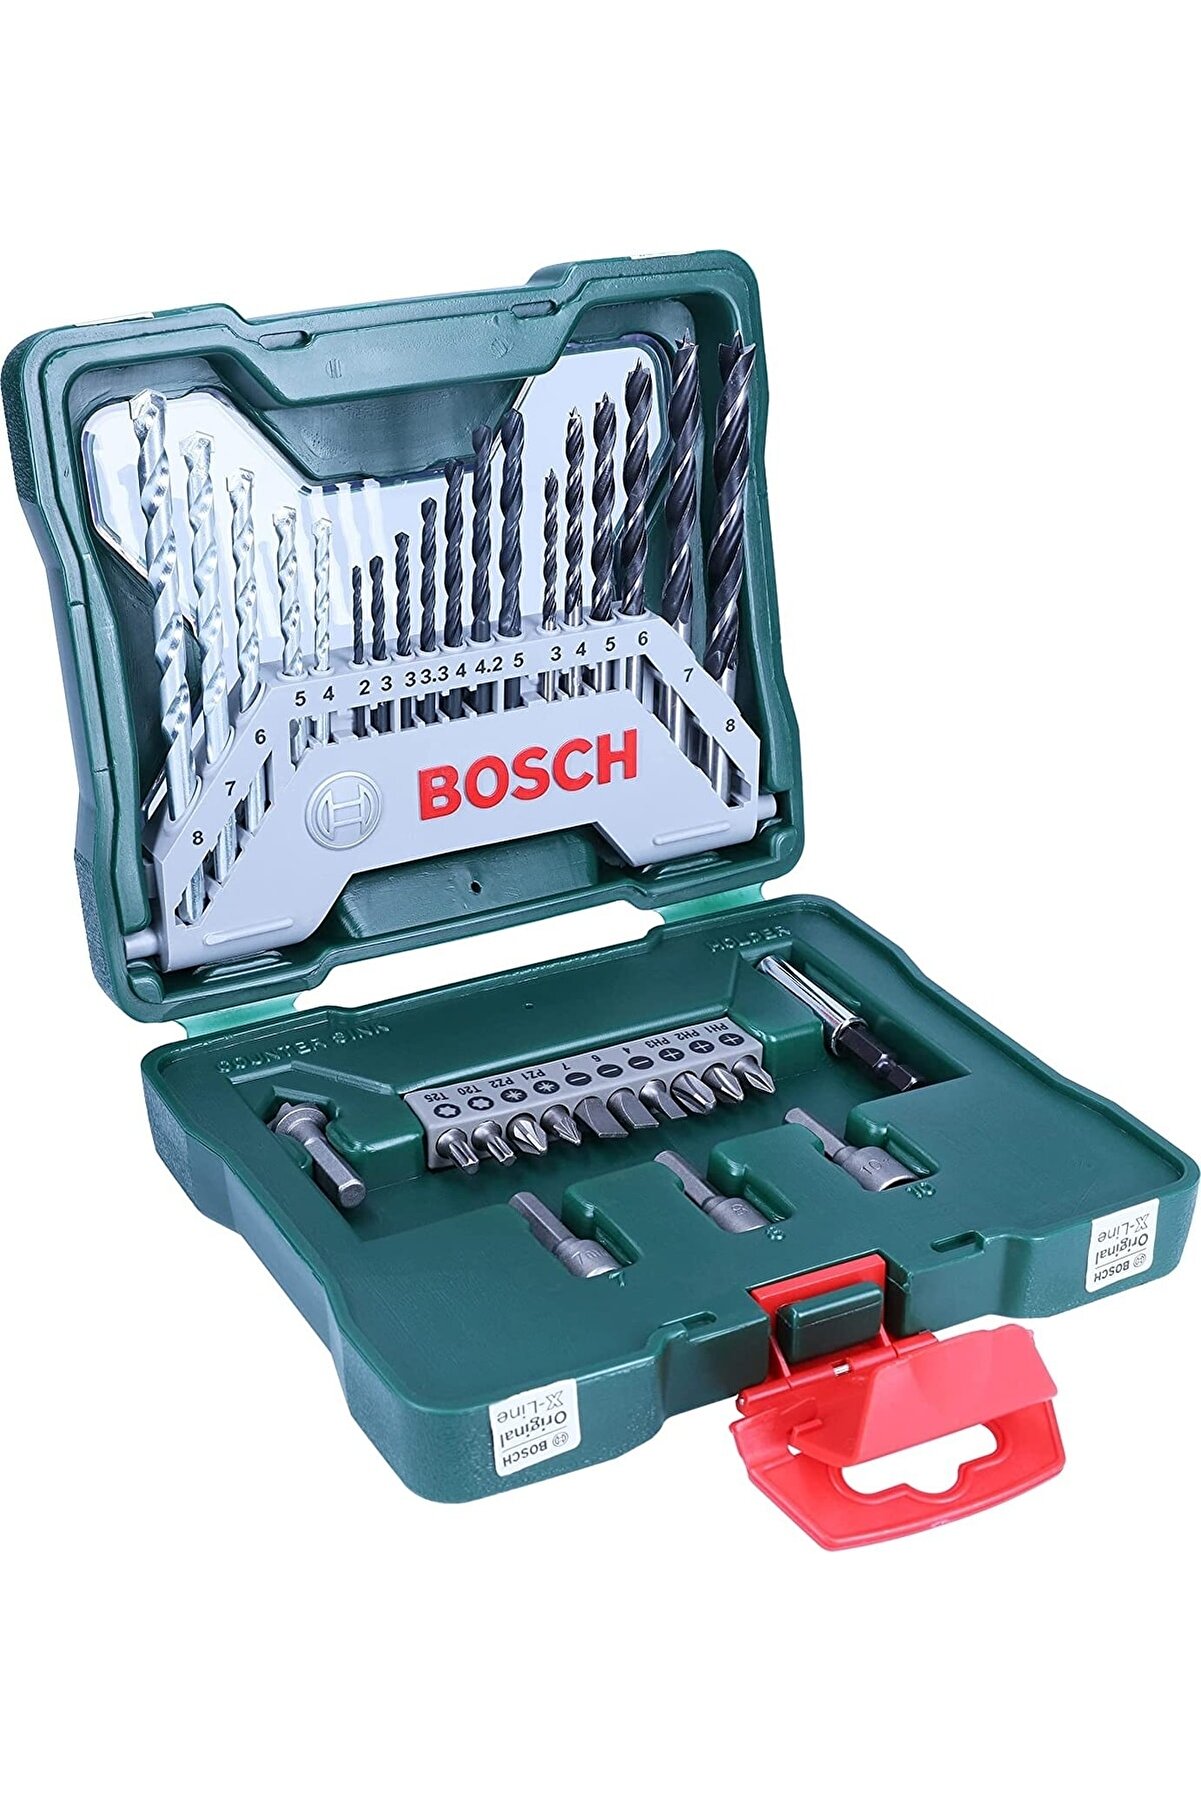 Bosch 33 Parça Matkap Ucu Vidalama Ucu Lokma Ucu Seti + Mac Allister Darbeli Matkap 600 Watt